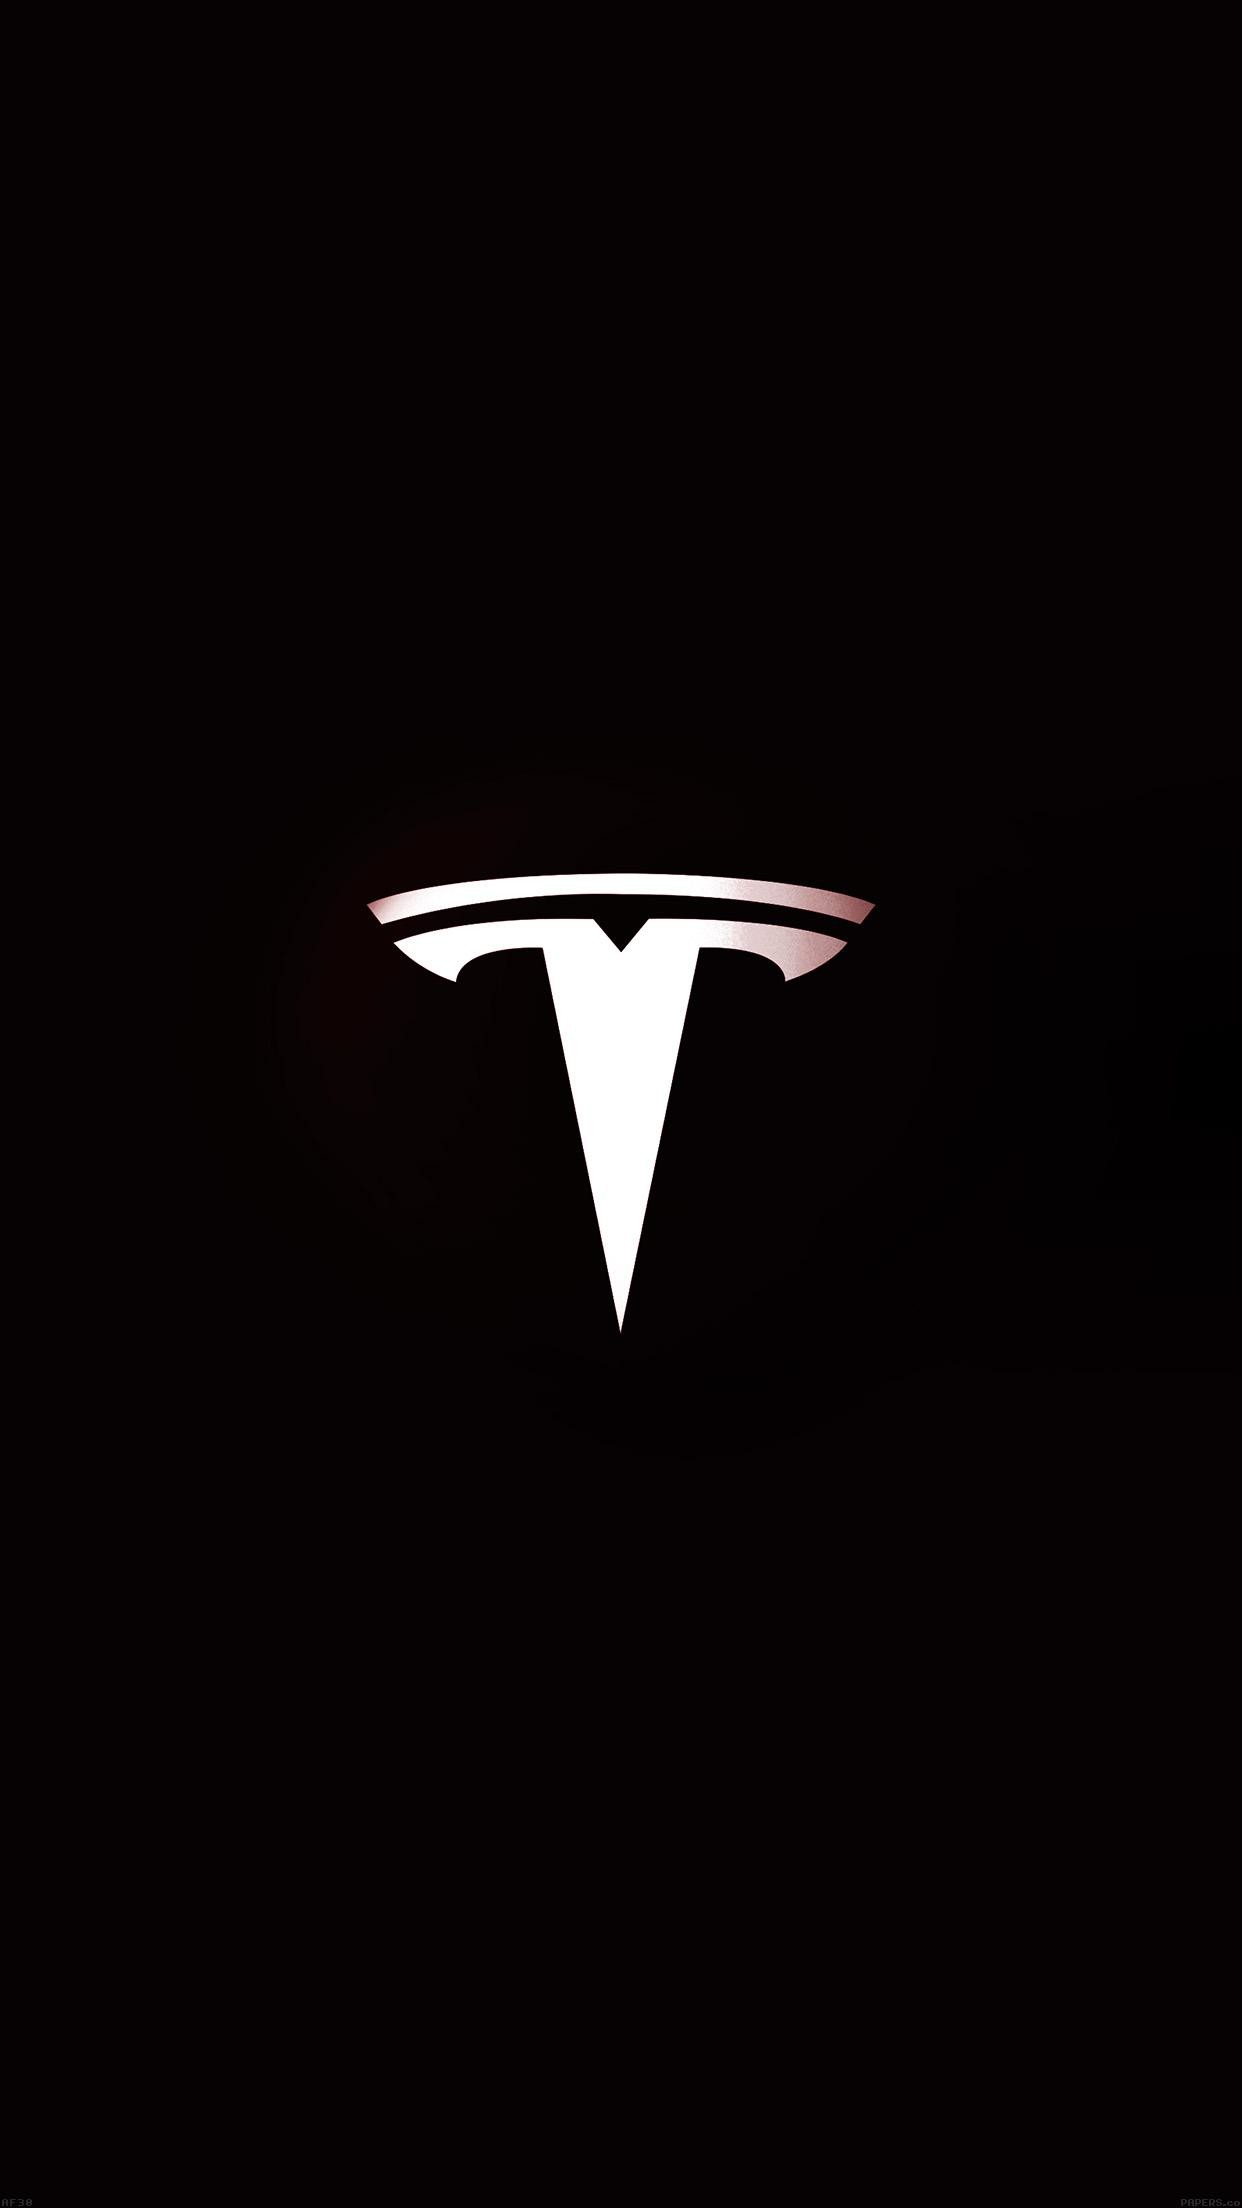 999 Tesla Logo Pictures  Download Free Images on Unsplash